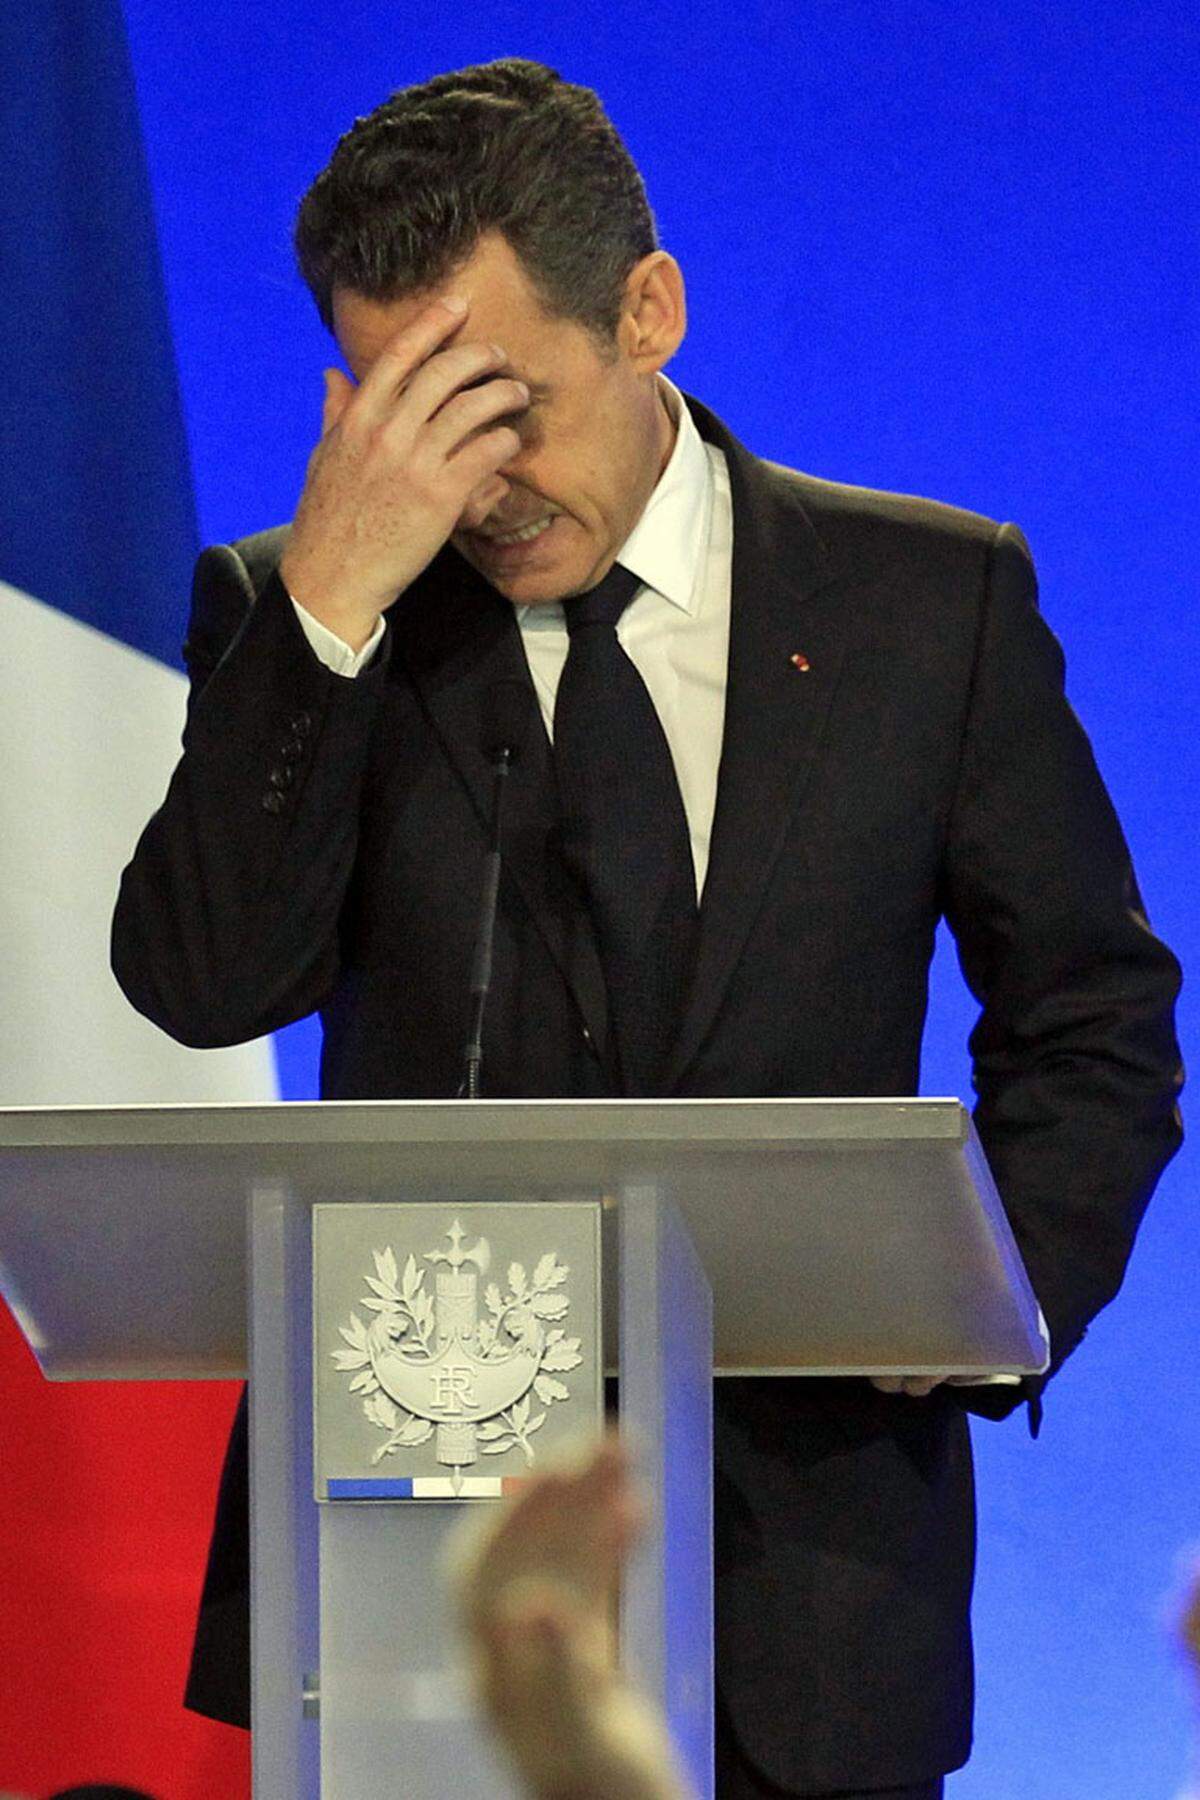 Aus für "Super-Sarko": Der Mai läutete das Ende der politischen Karriere von Nicolas Sarkozy ein. Im zweiten Wahlgang der Präsidentschaftswahlen musste sich der Franzose seinem sozialistischen Herausforderer Francois Hollande geschlagen geben. "Nach 35 Jahren in der Politik kann mein Platz nicht mehr derselbe sein", kommentierte Sarkozy knapp.